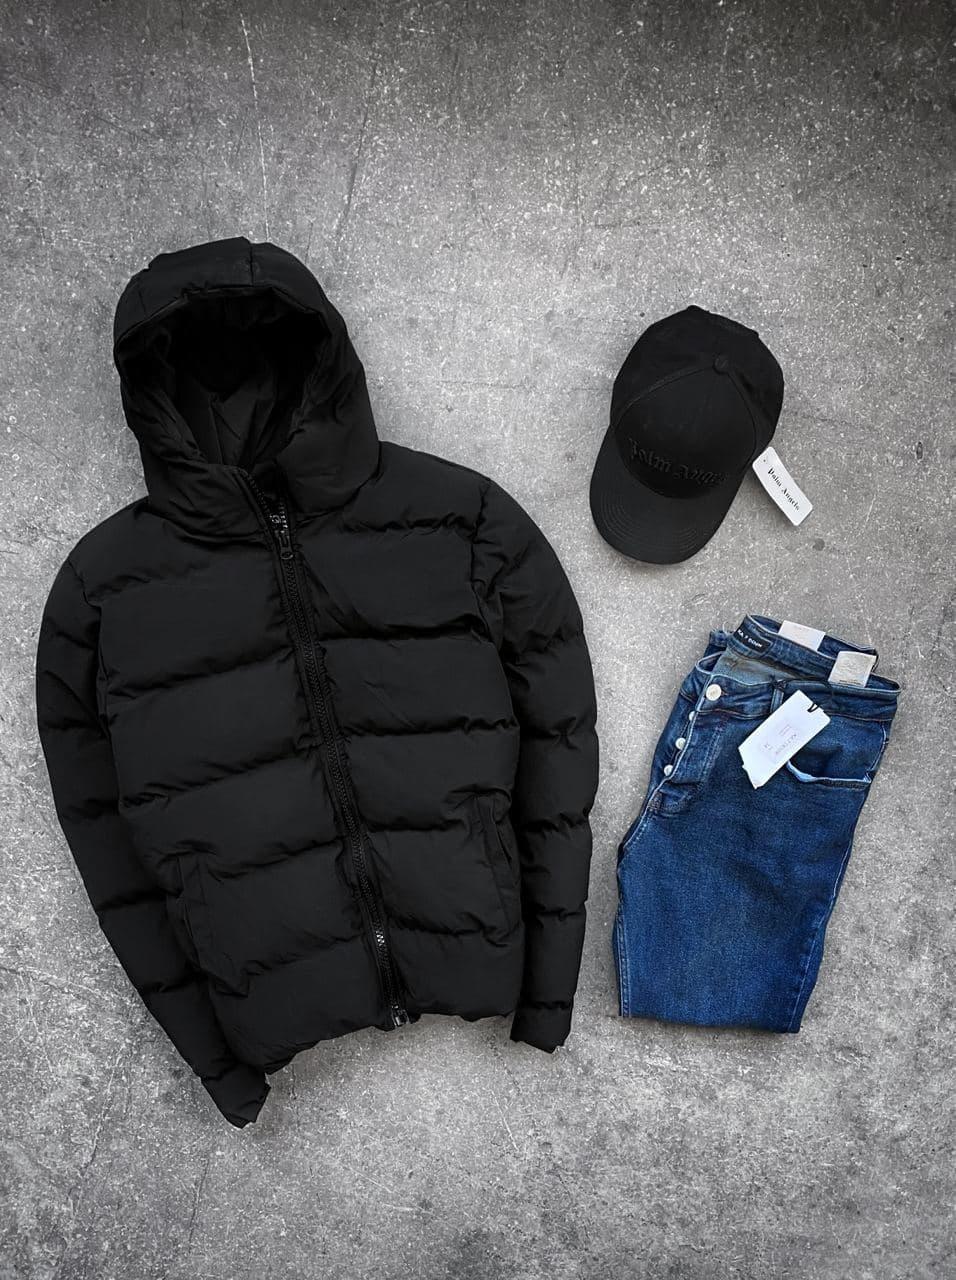 

Мужская зимняя куртка стильная без принта (черная) sKb13 короткая теплая пуховка с капюшоном M